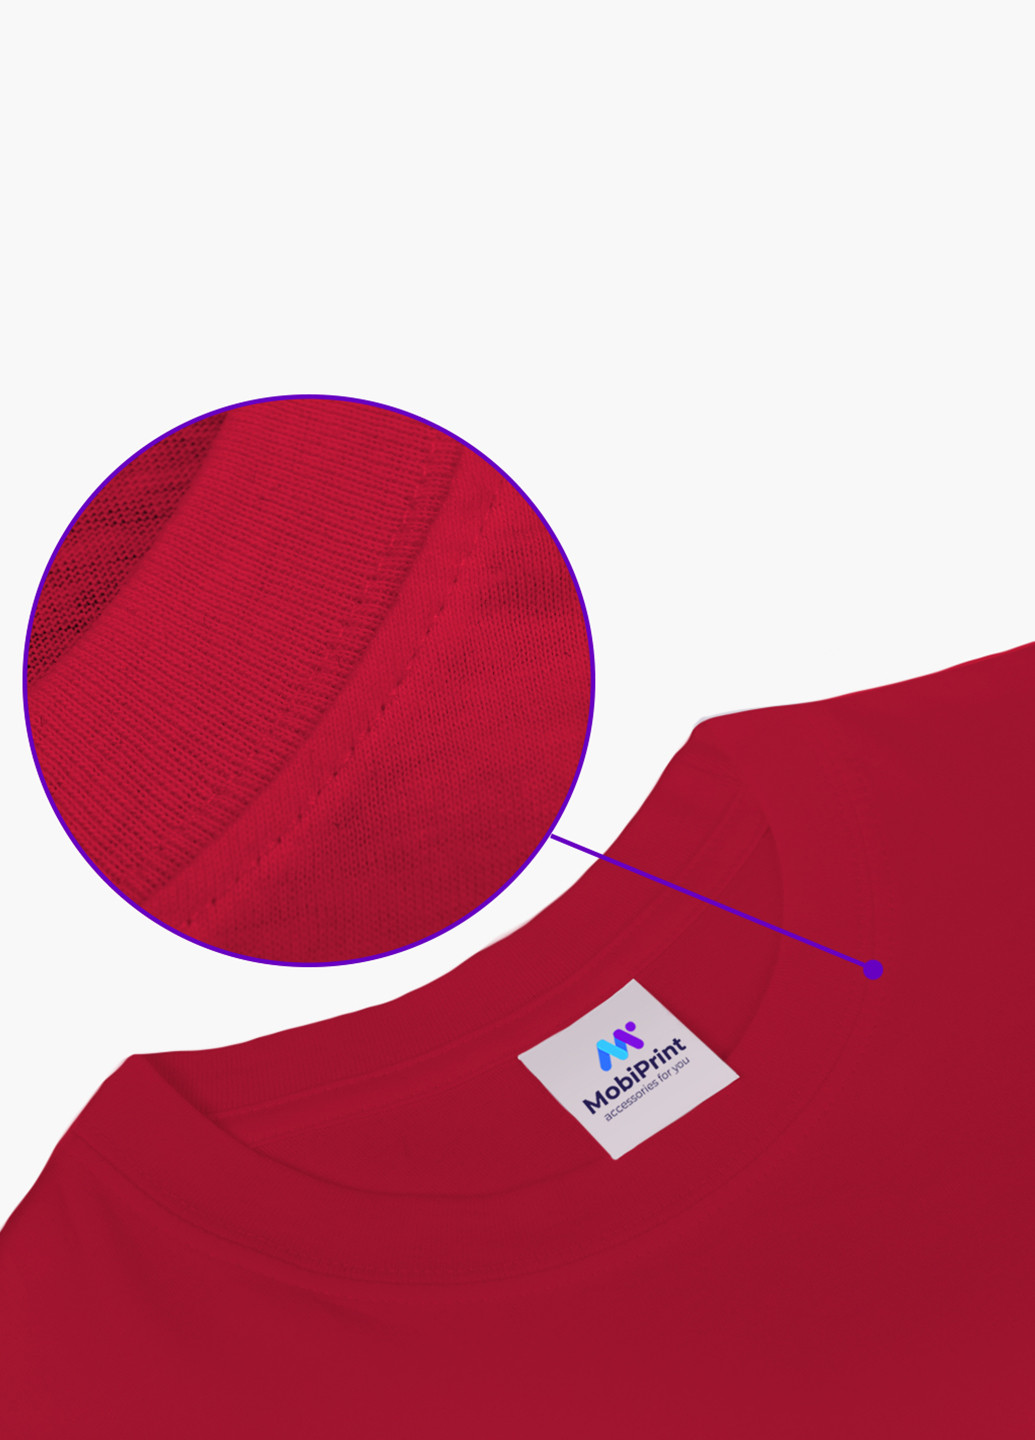 Червона демісезонна футболка дитяча робокар полі (robocar poli) (9224-1620) MobiPrint